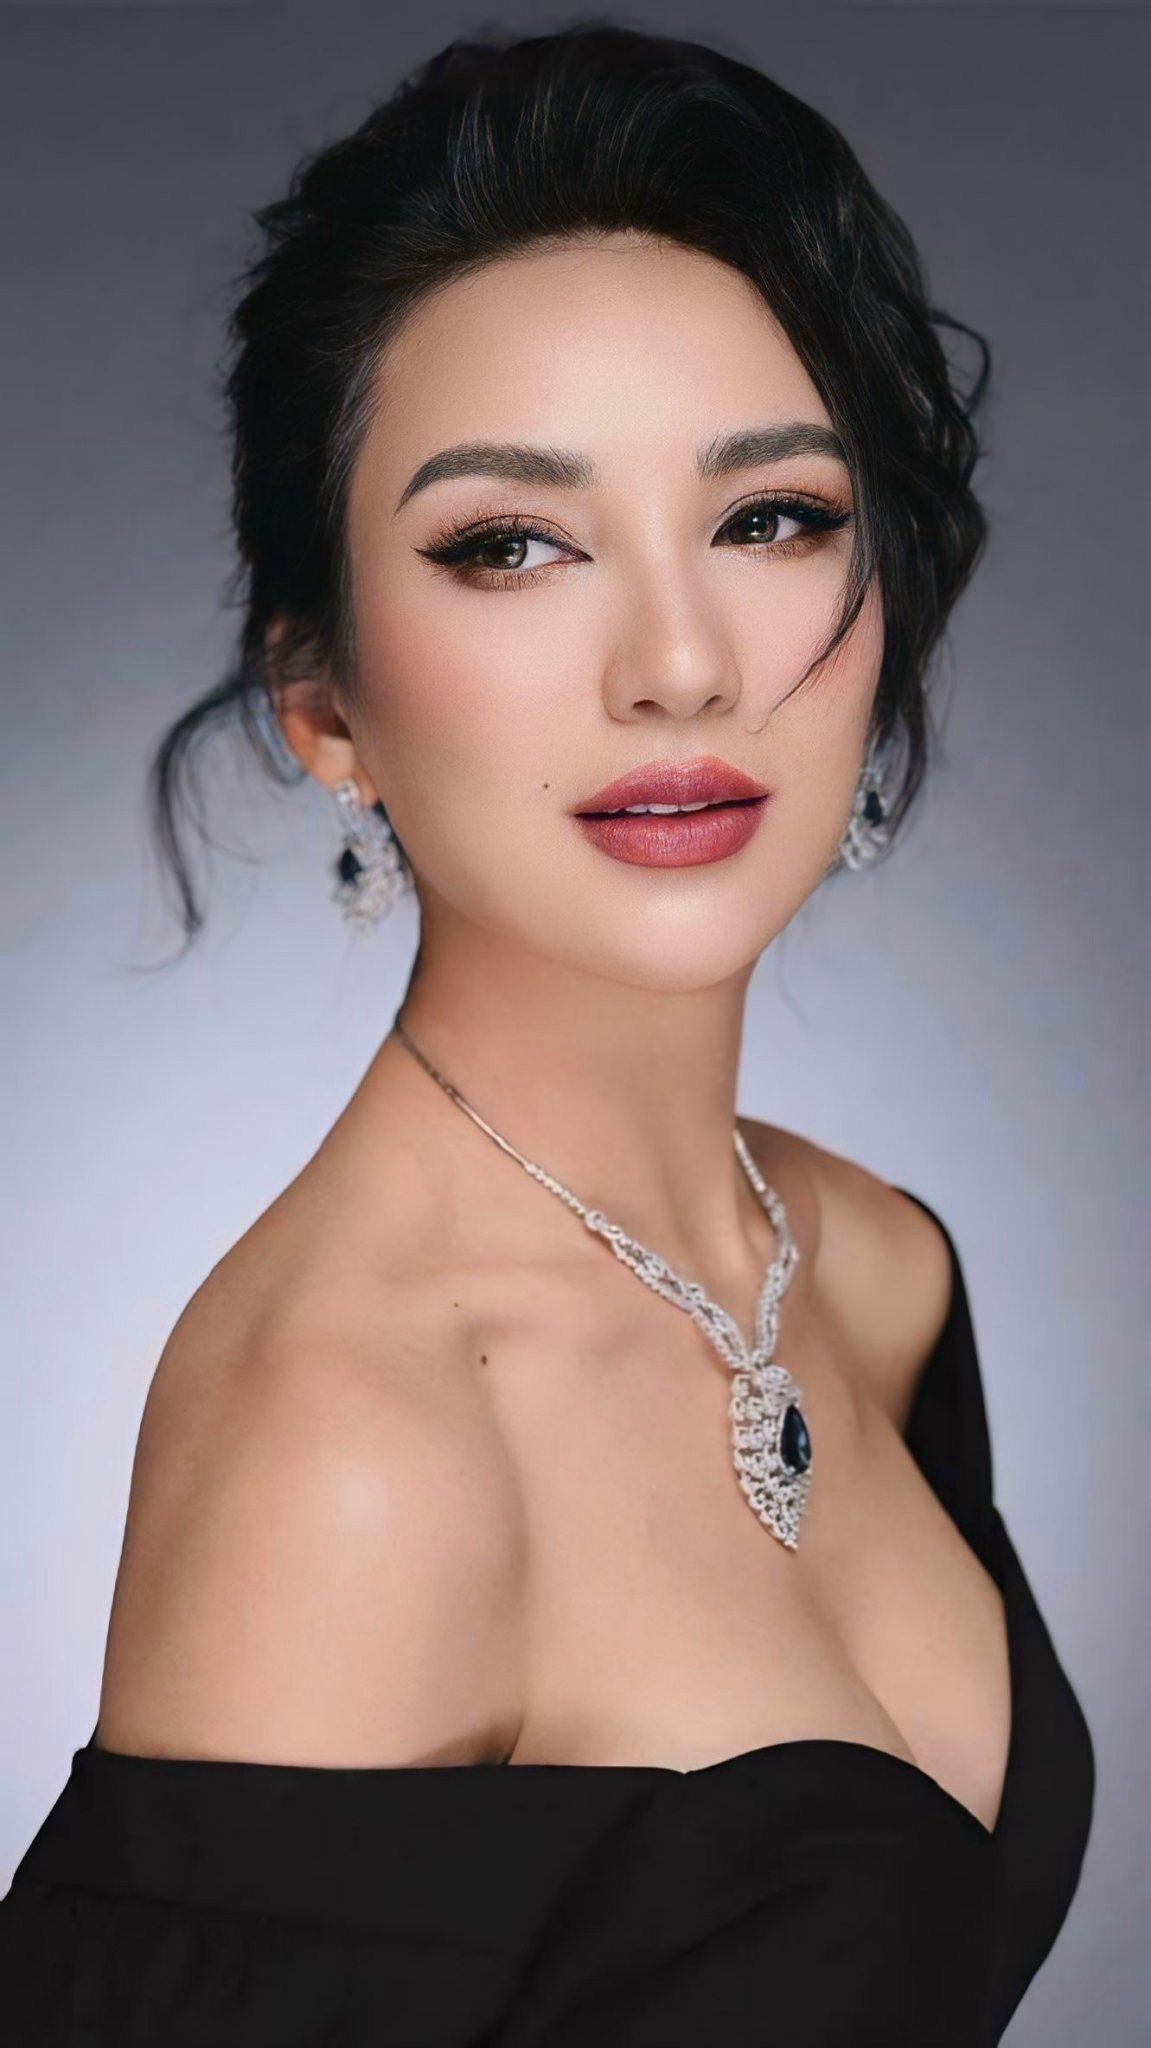 Sau 16 năm đăng quang&nbsp;“Hoa hậu Du lịch Việt Nam”, Ngọc Diễm vẫn giữ được nhan sắc rạng rỡ.&nbsp;